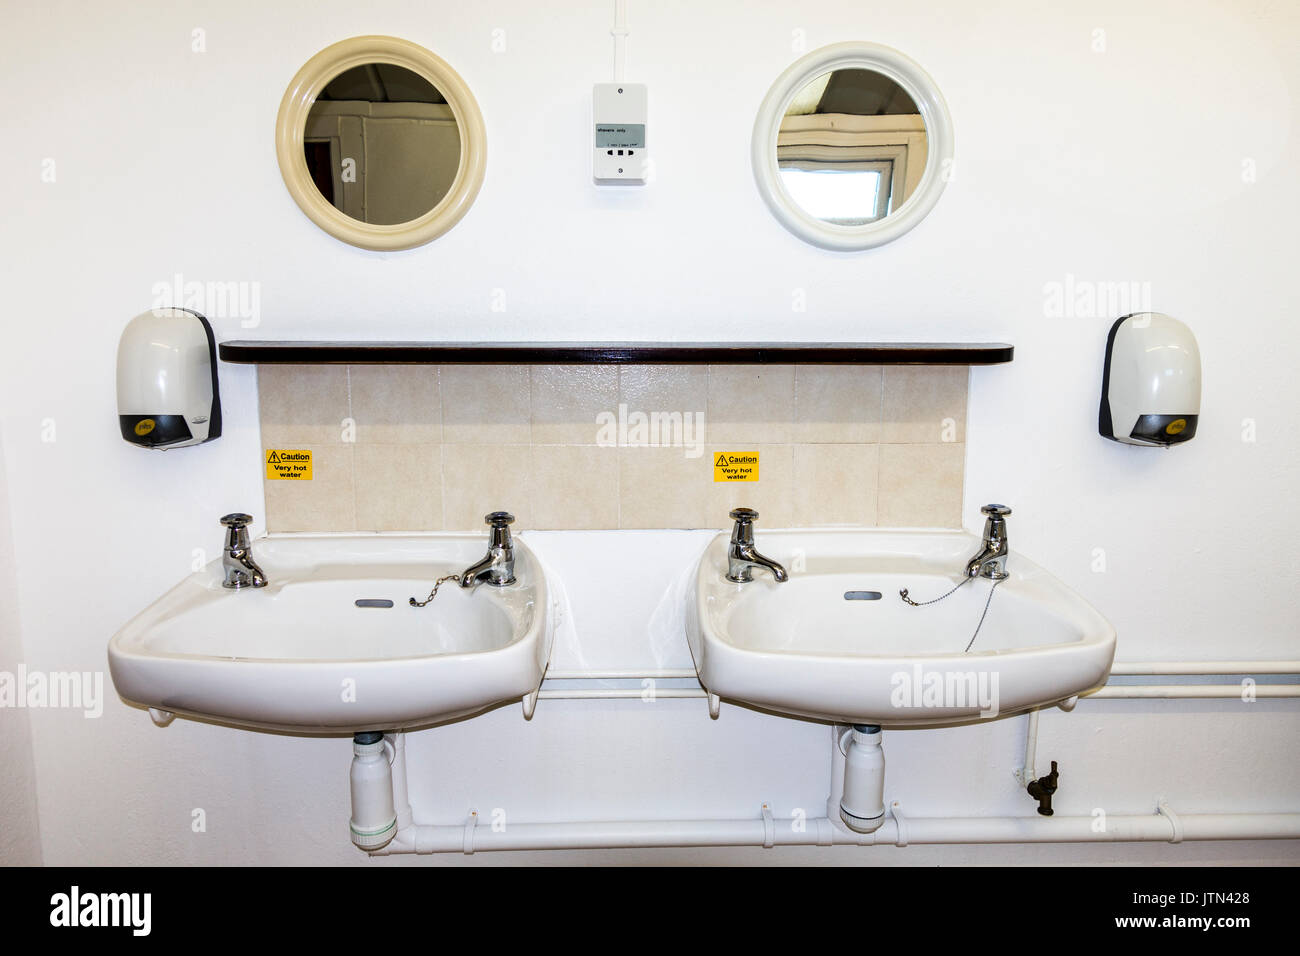 Deux lavabos dans un bloc sanitaire pour un camping. Angleterre, Royaume-Uni. Banque D'Images